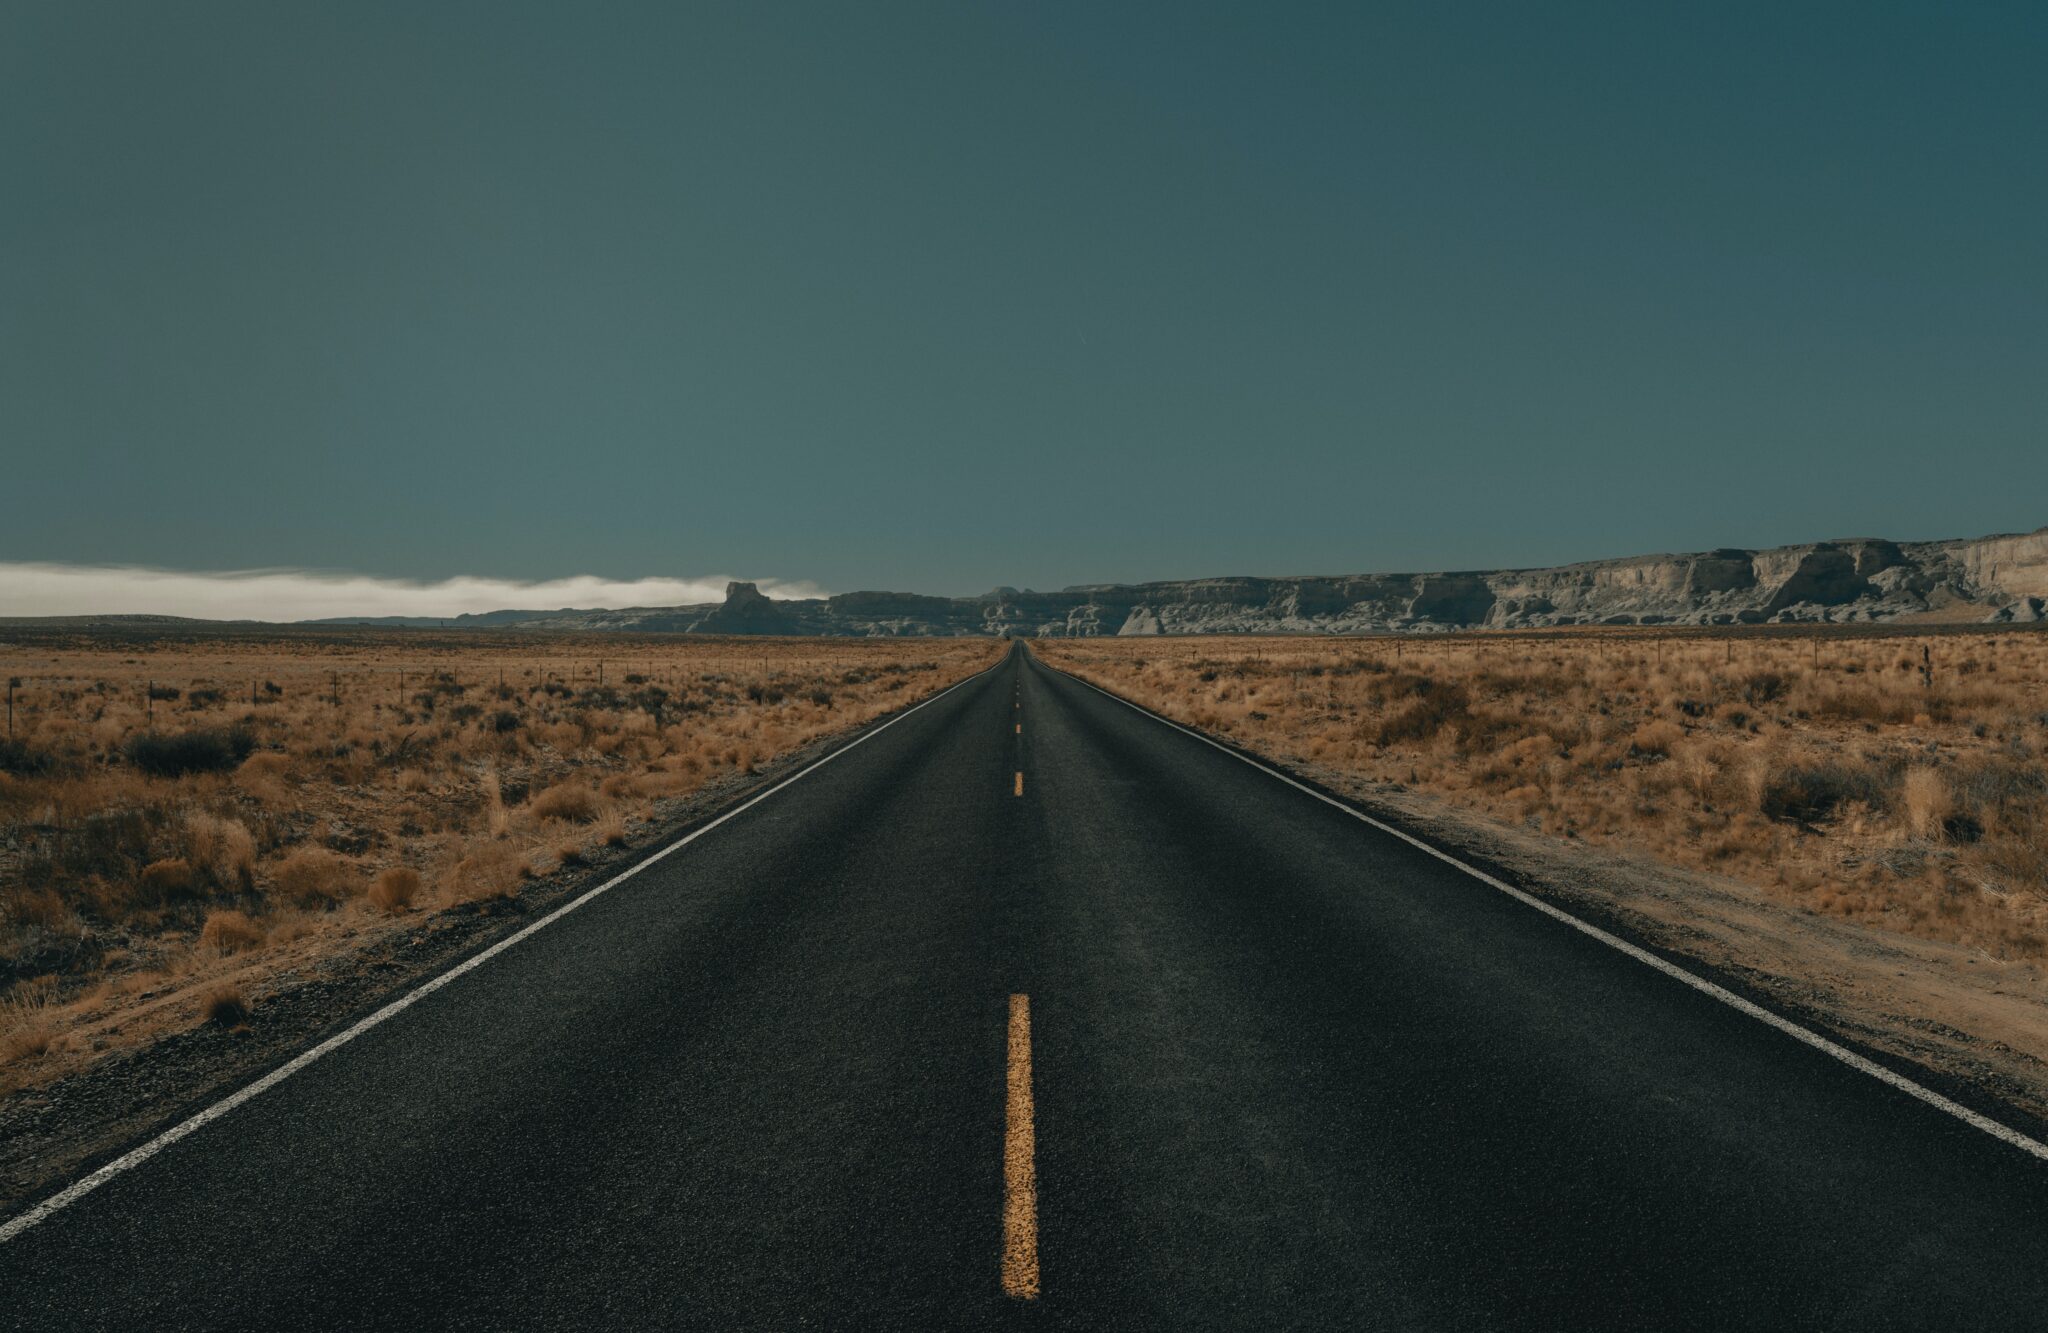 a road